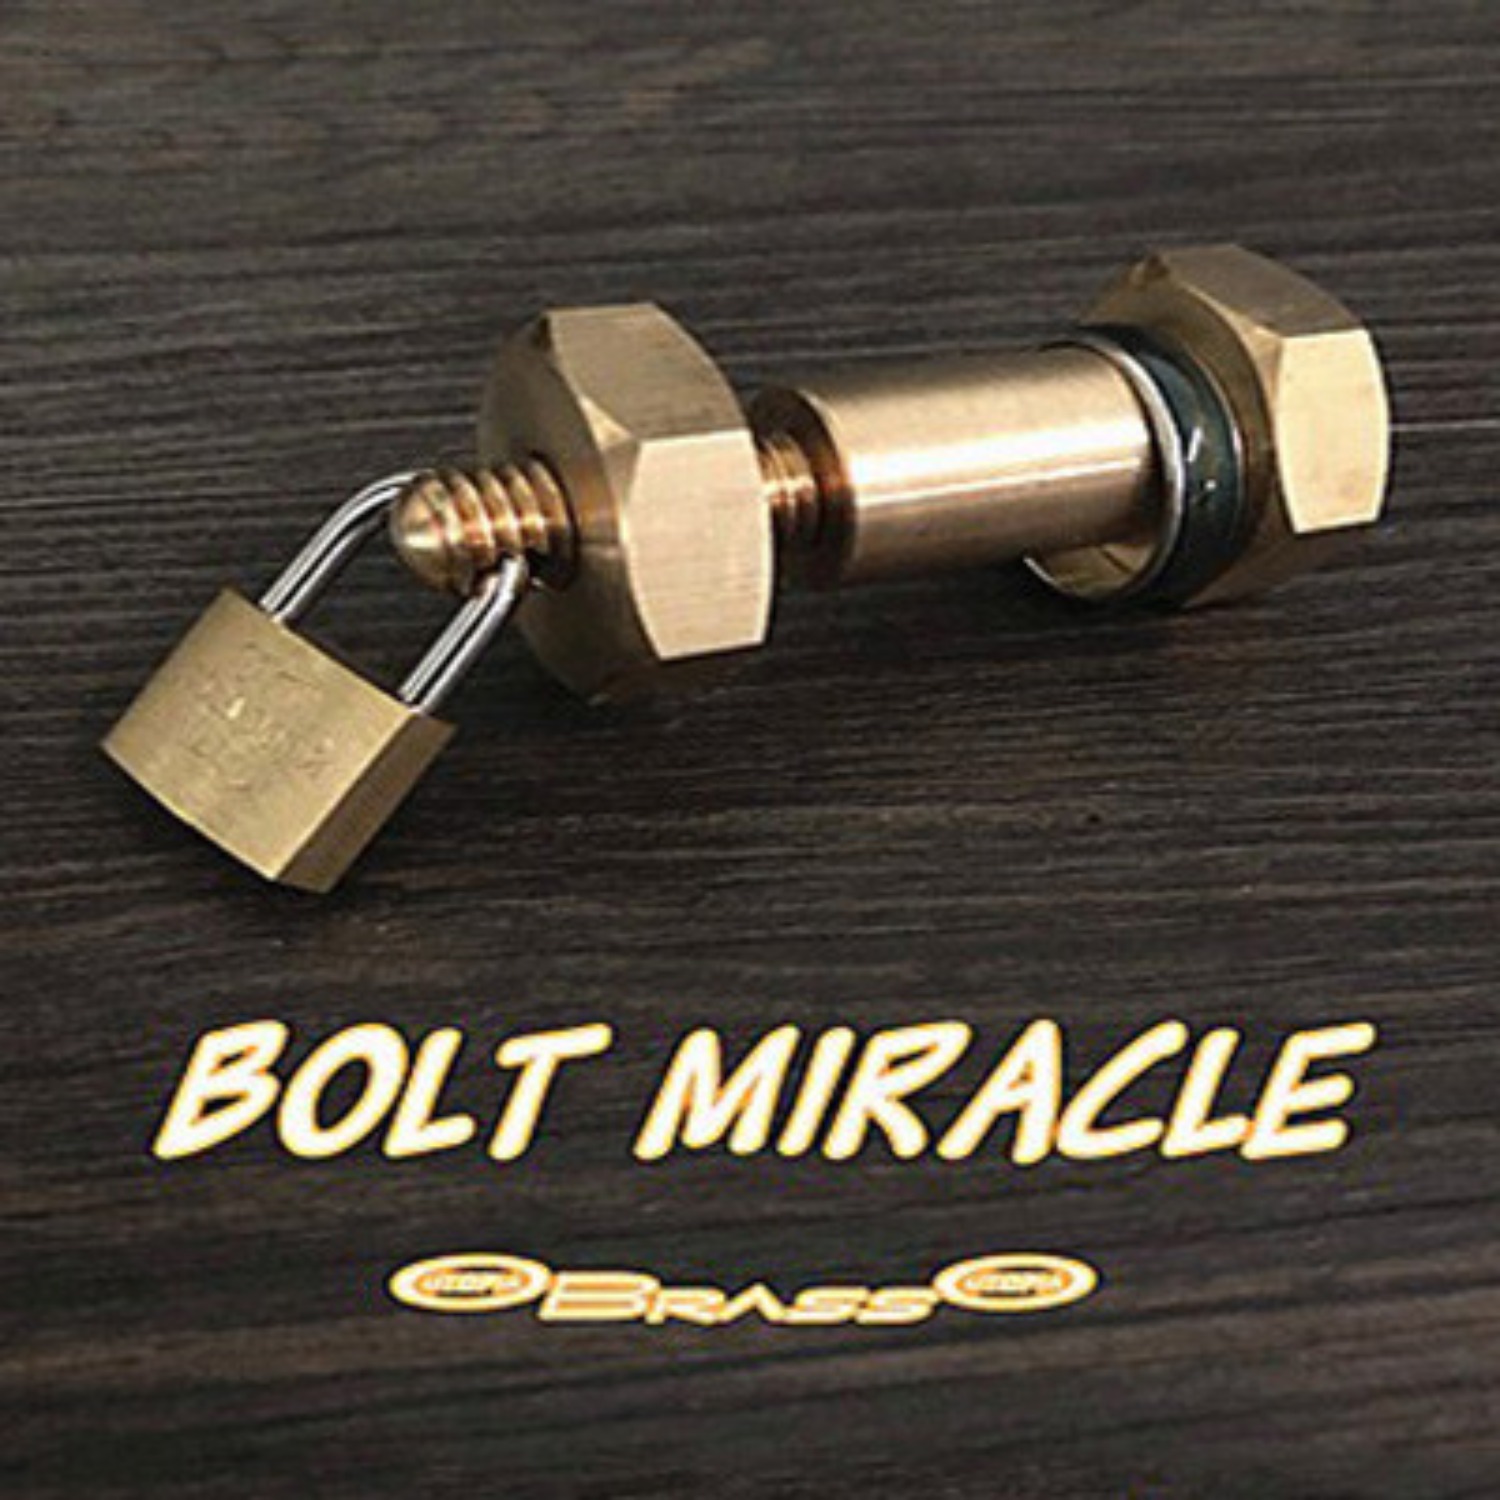 [볼트미라클]Bolt Miracle (Brass)관객의 싸인한 반지를 순식간에 볼트속으로 이동시켜버립니다.